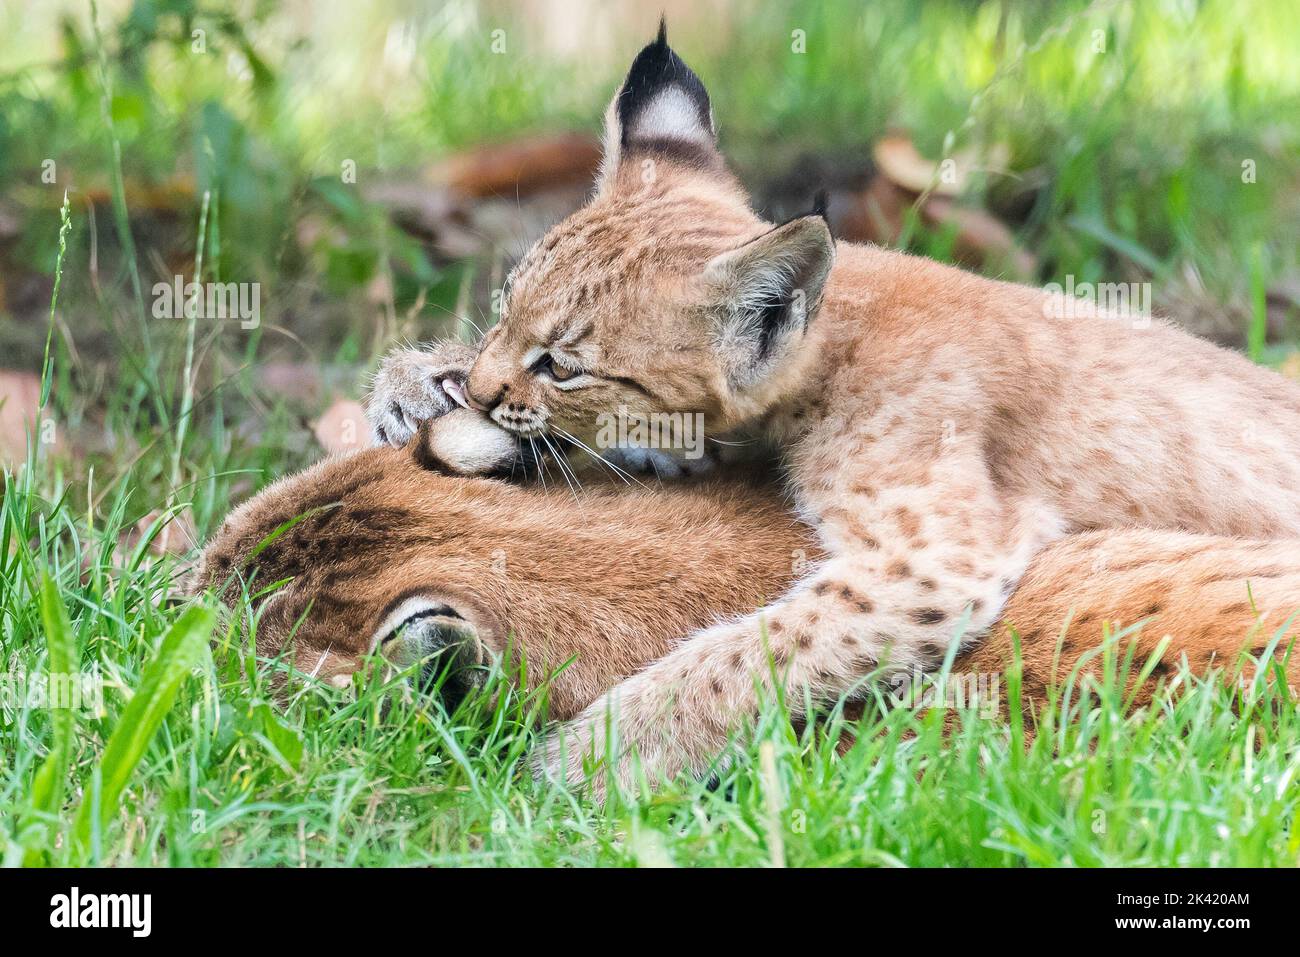 Lynx with kitten Stock Photo